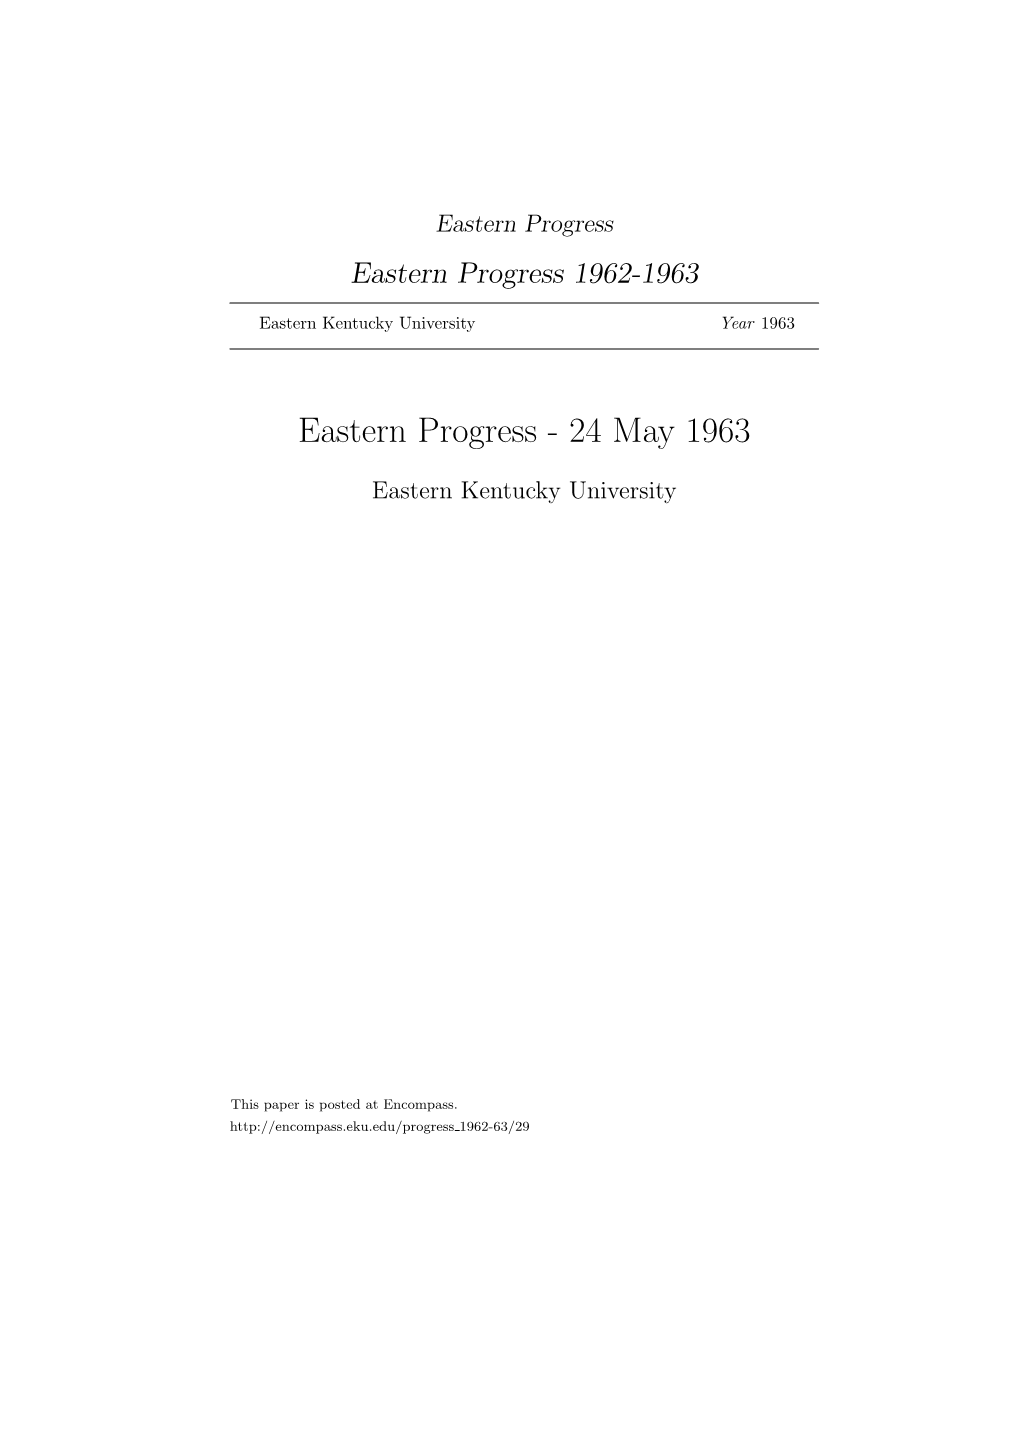 Eastern Progress Eastern Progress 1962-1963